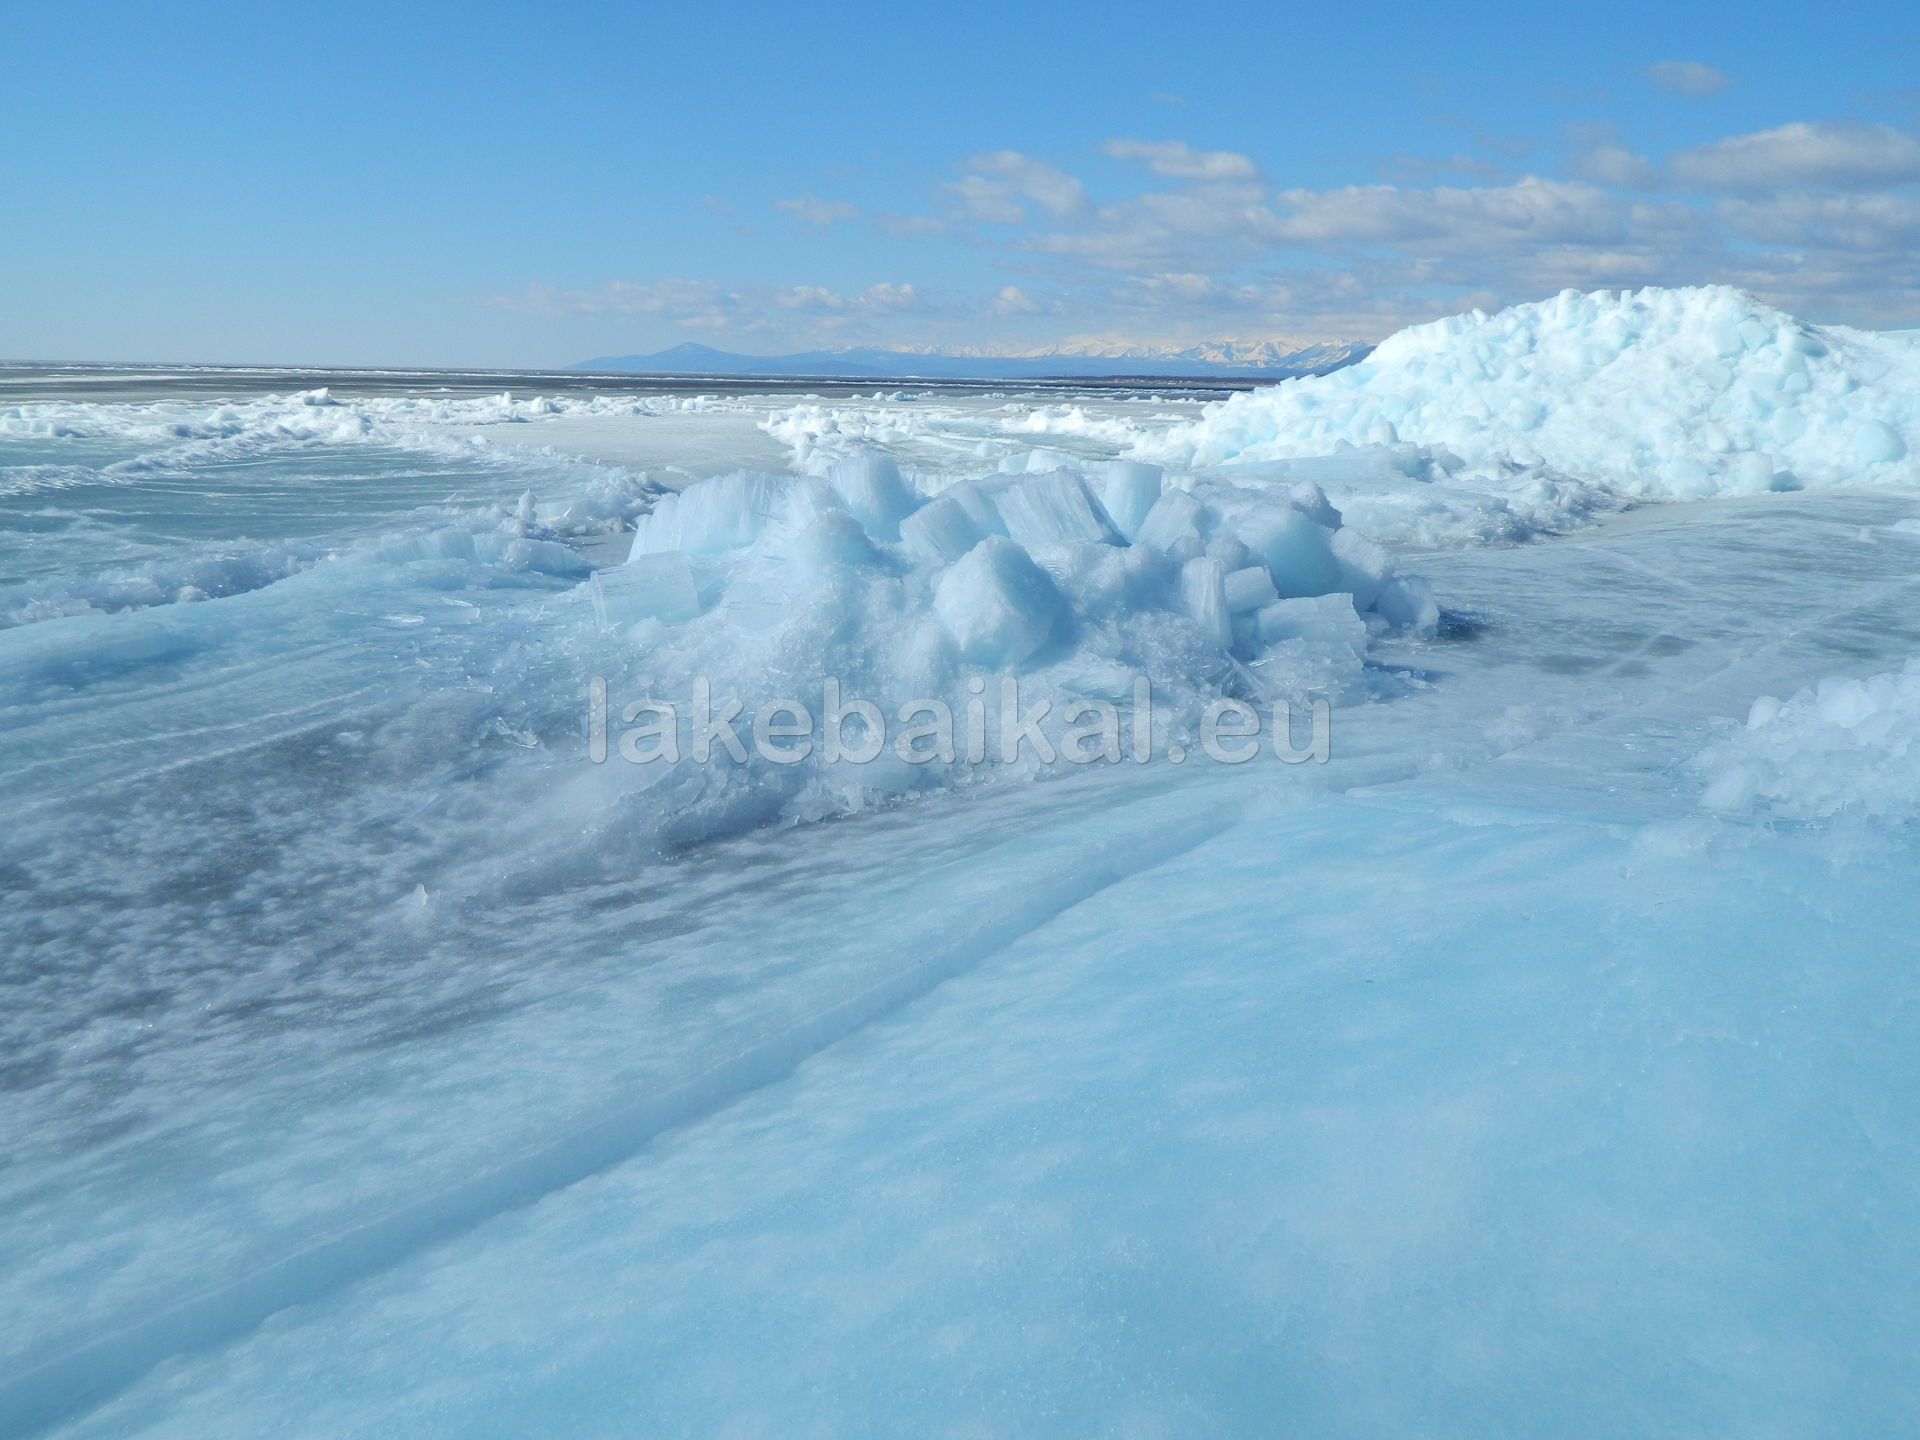 Lake Baikal in winter, frozen Baikal 